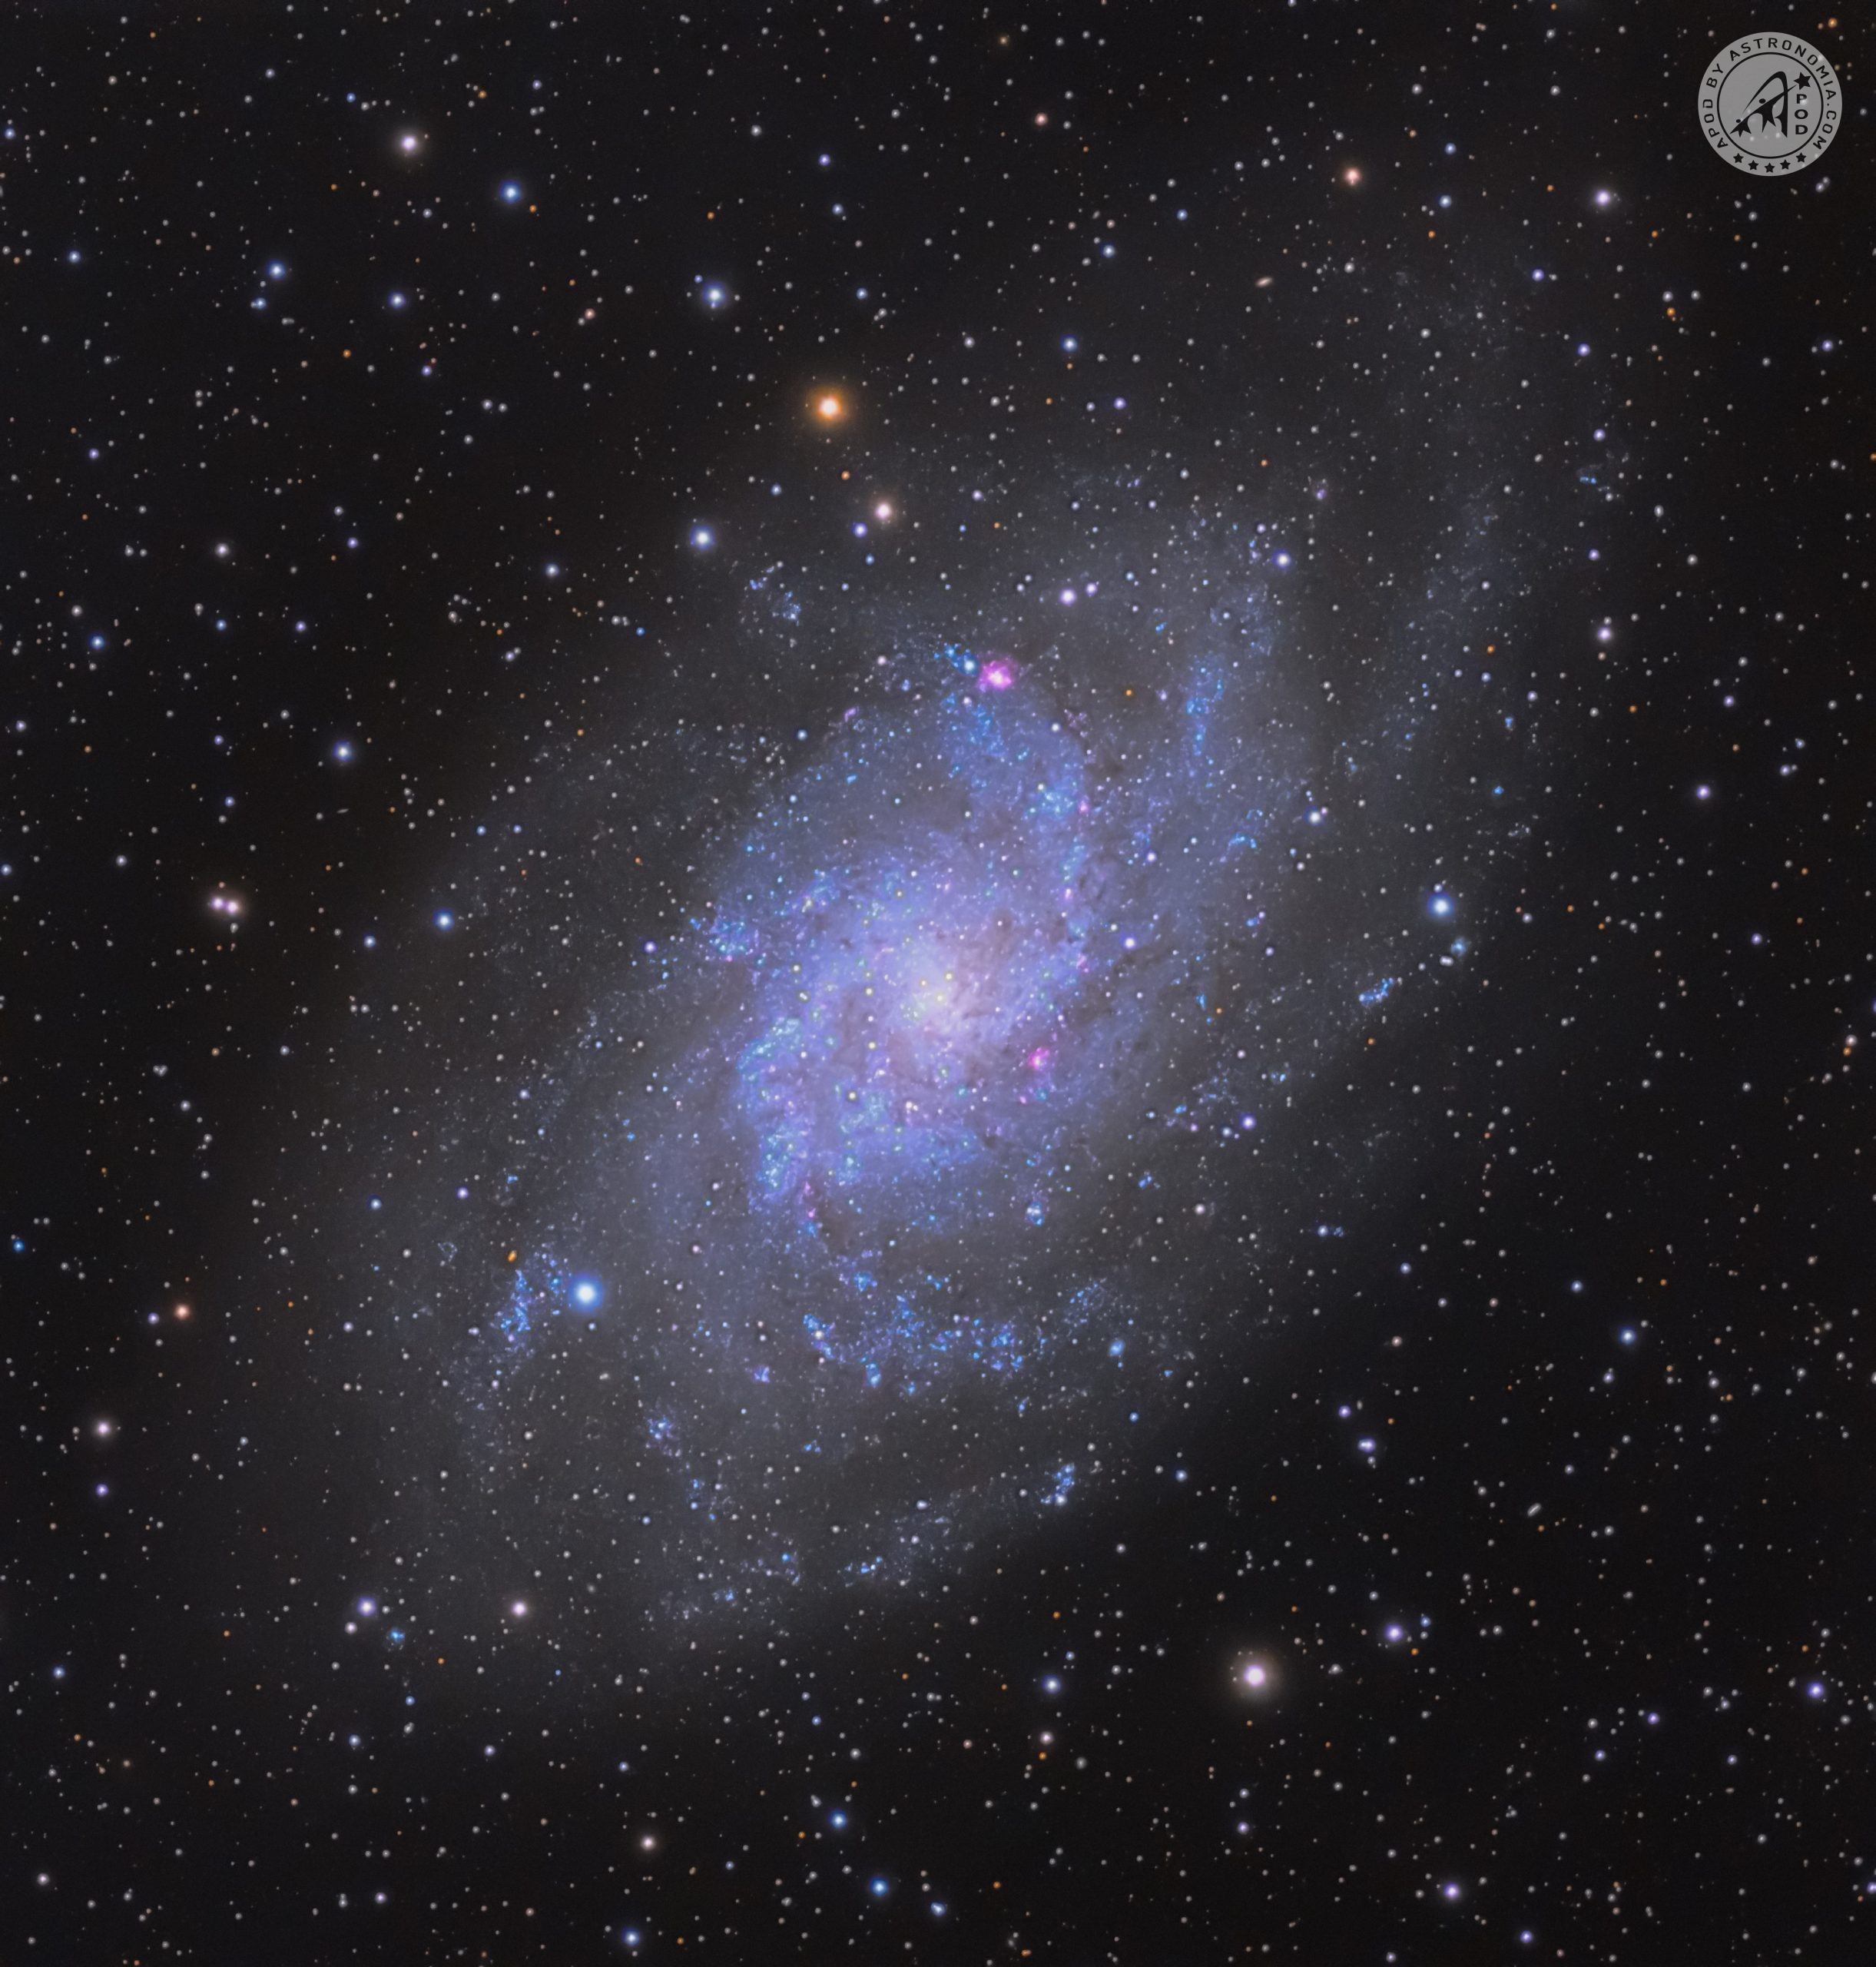 Galassia del Triangolo – M33